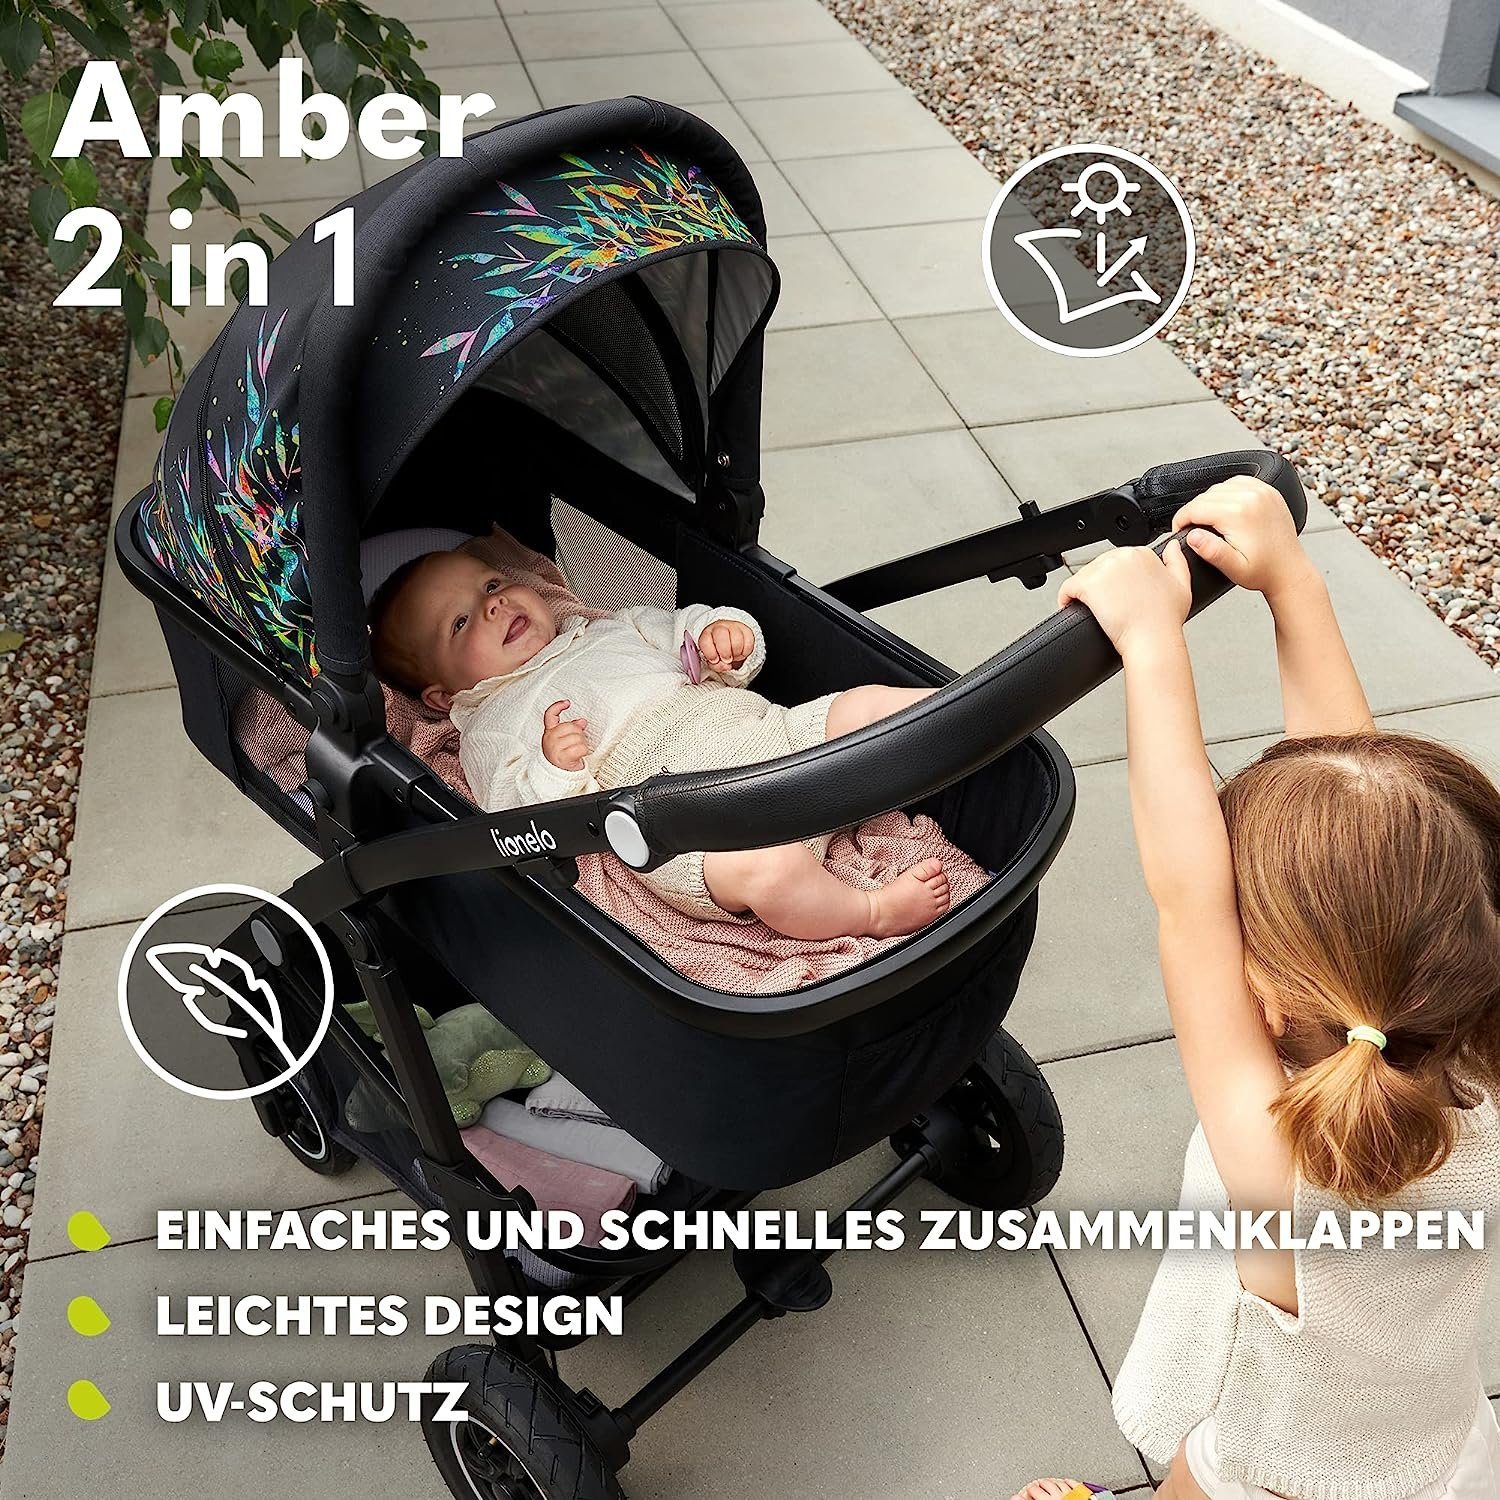 lionelo Kombi-Kinderwagen Amber, Regenschutz Schutzüberzug Lovin Tasche Moskitonetz 2in1